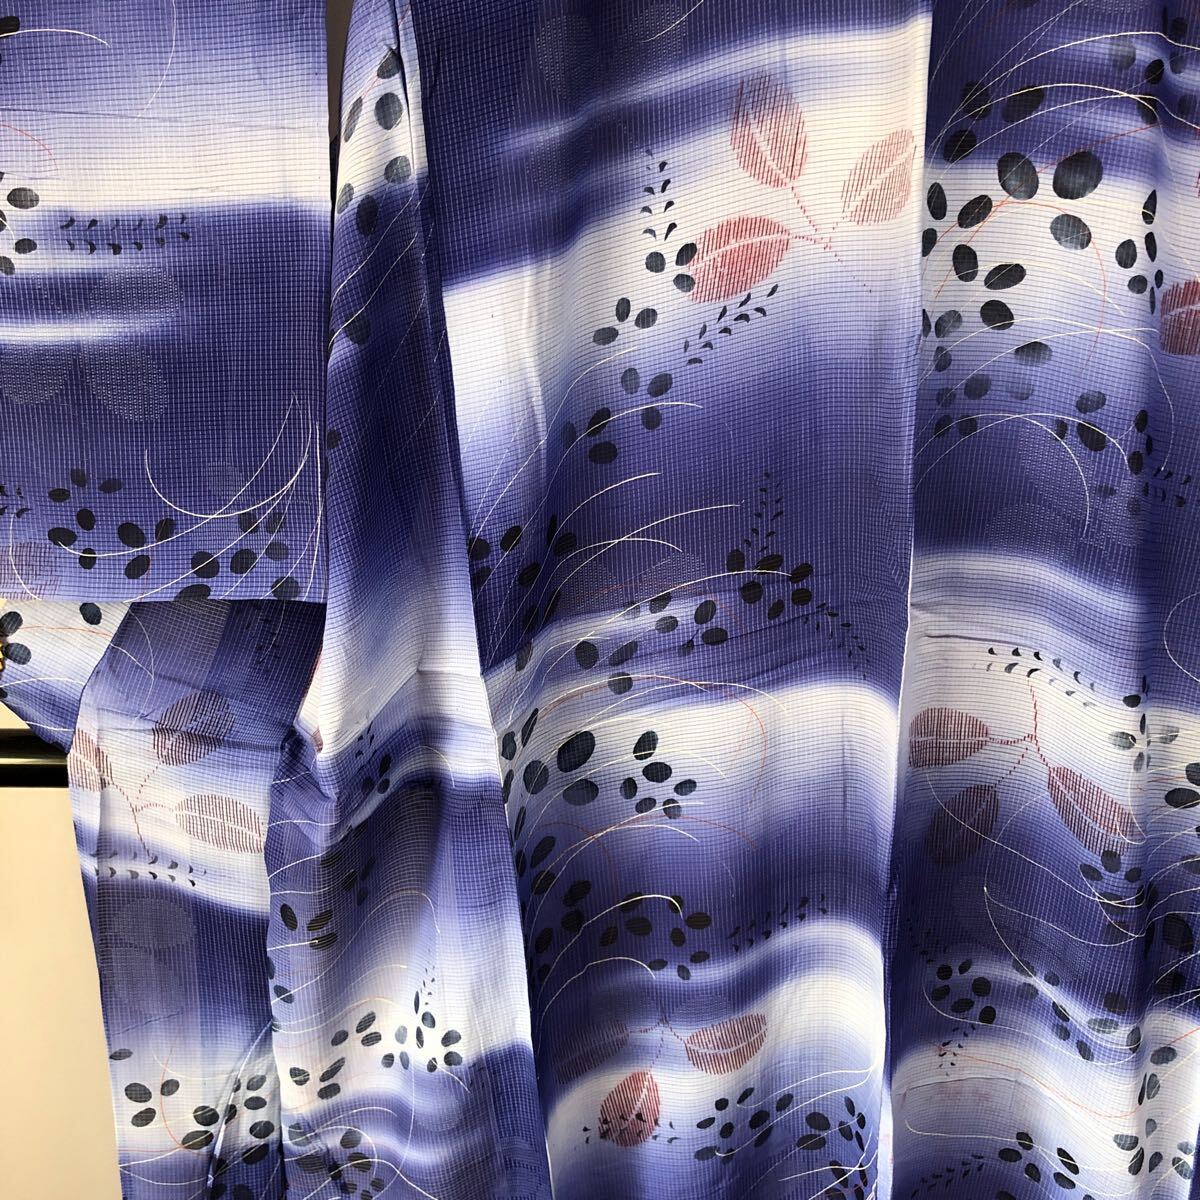  античный кимоно одиночный . синий градация растения Showa Retro Taisho роман современный мир ...ko-te переделка шелк натуральный шелк 100%.22-05t